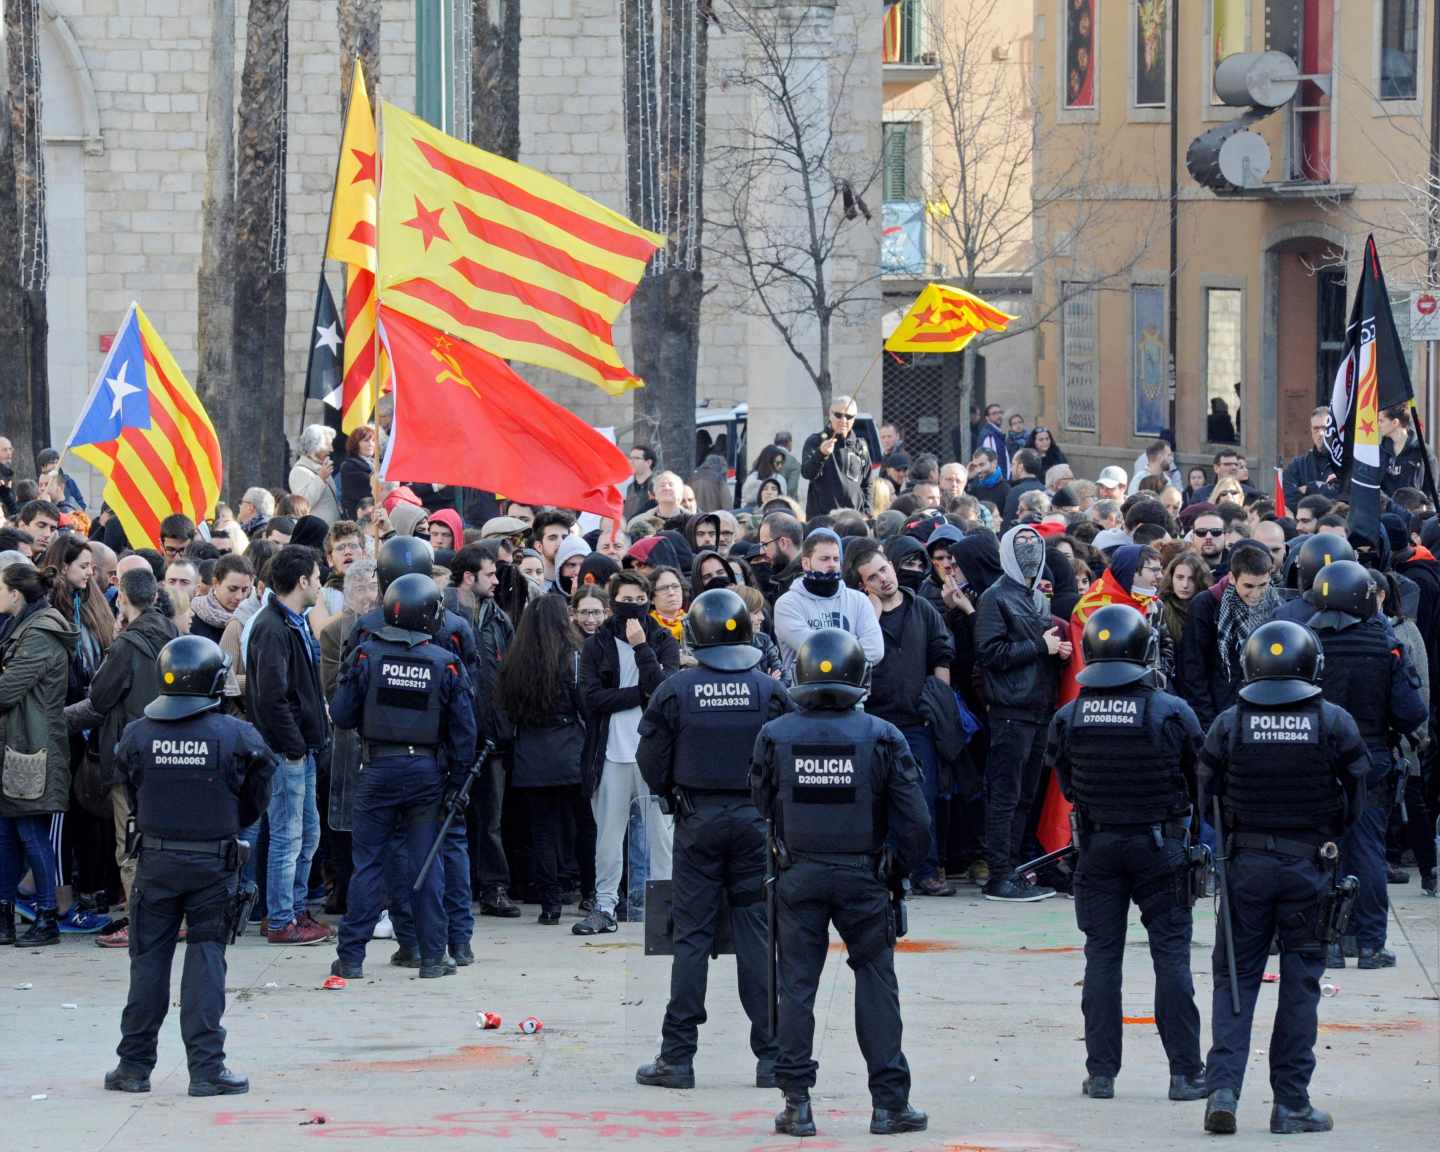 Mossos d'esquadra frente a las numerosas personas, muchas de ellas encapuchadas, que trataban de boicotear los actos conmemorativos de la Constitución en Girona.